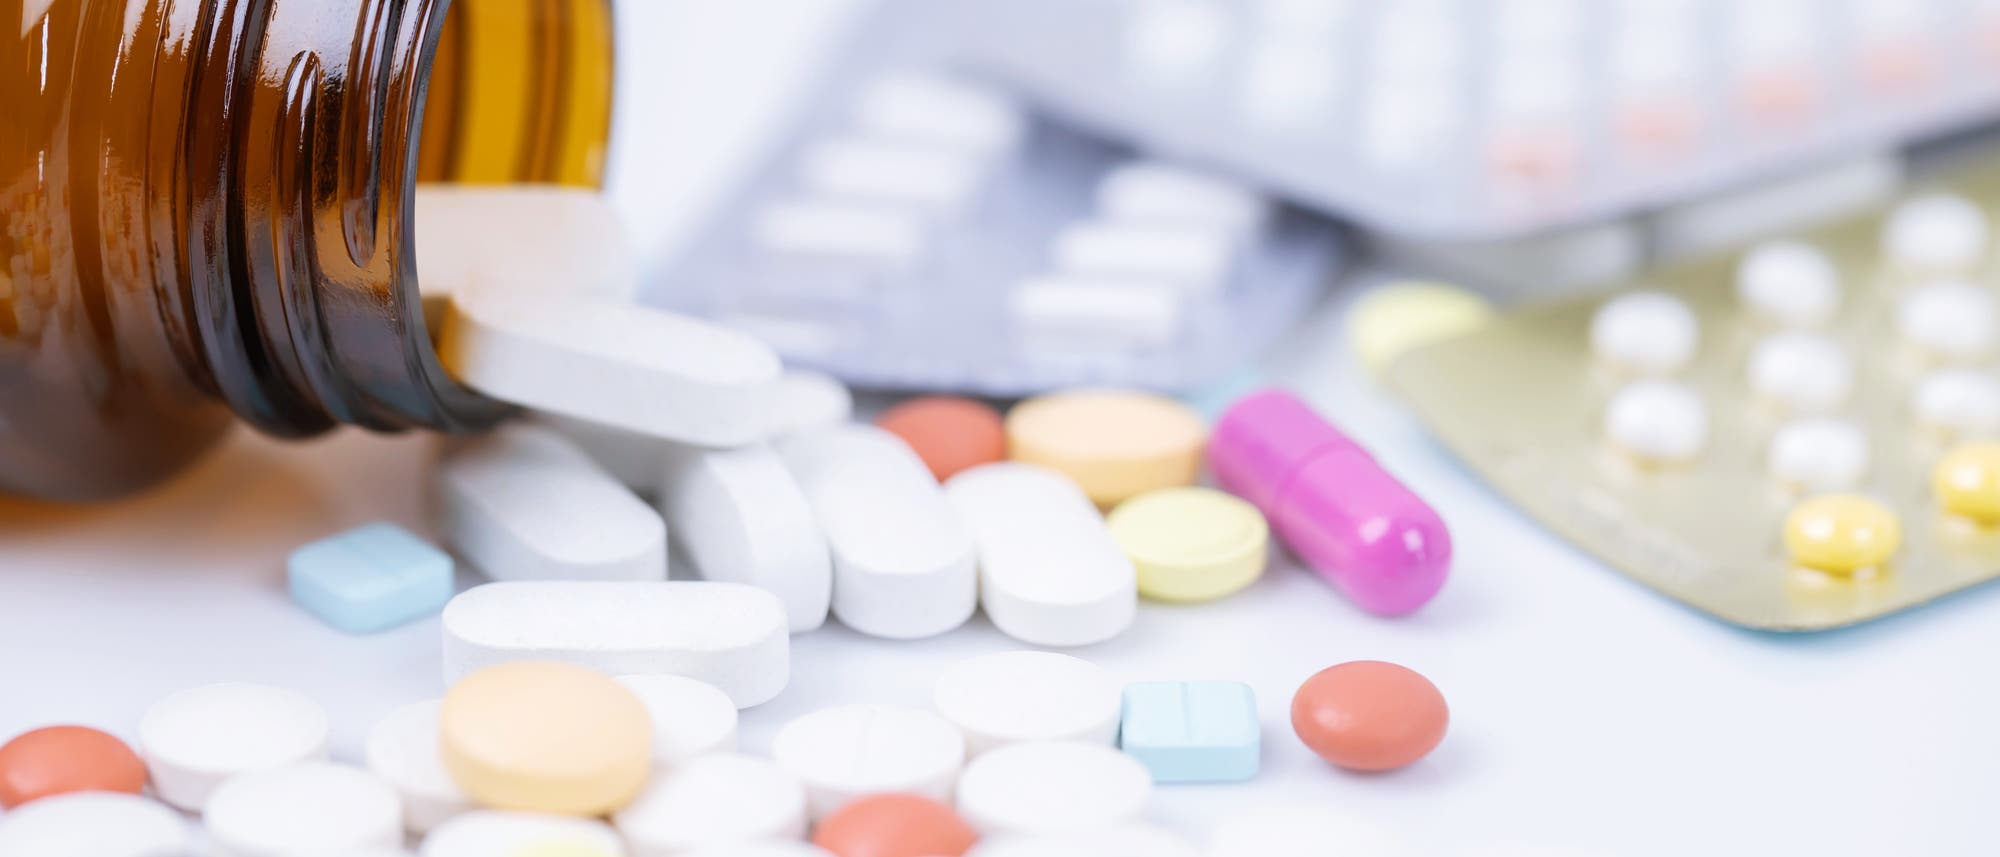 Tabletten und Kapseln in verschiedenen Farben liegen durcheinander.